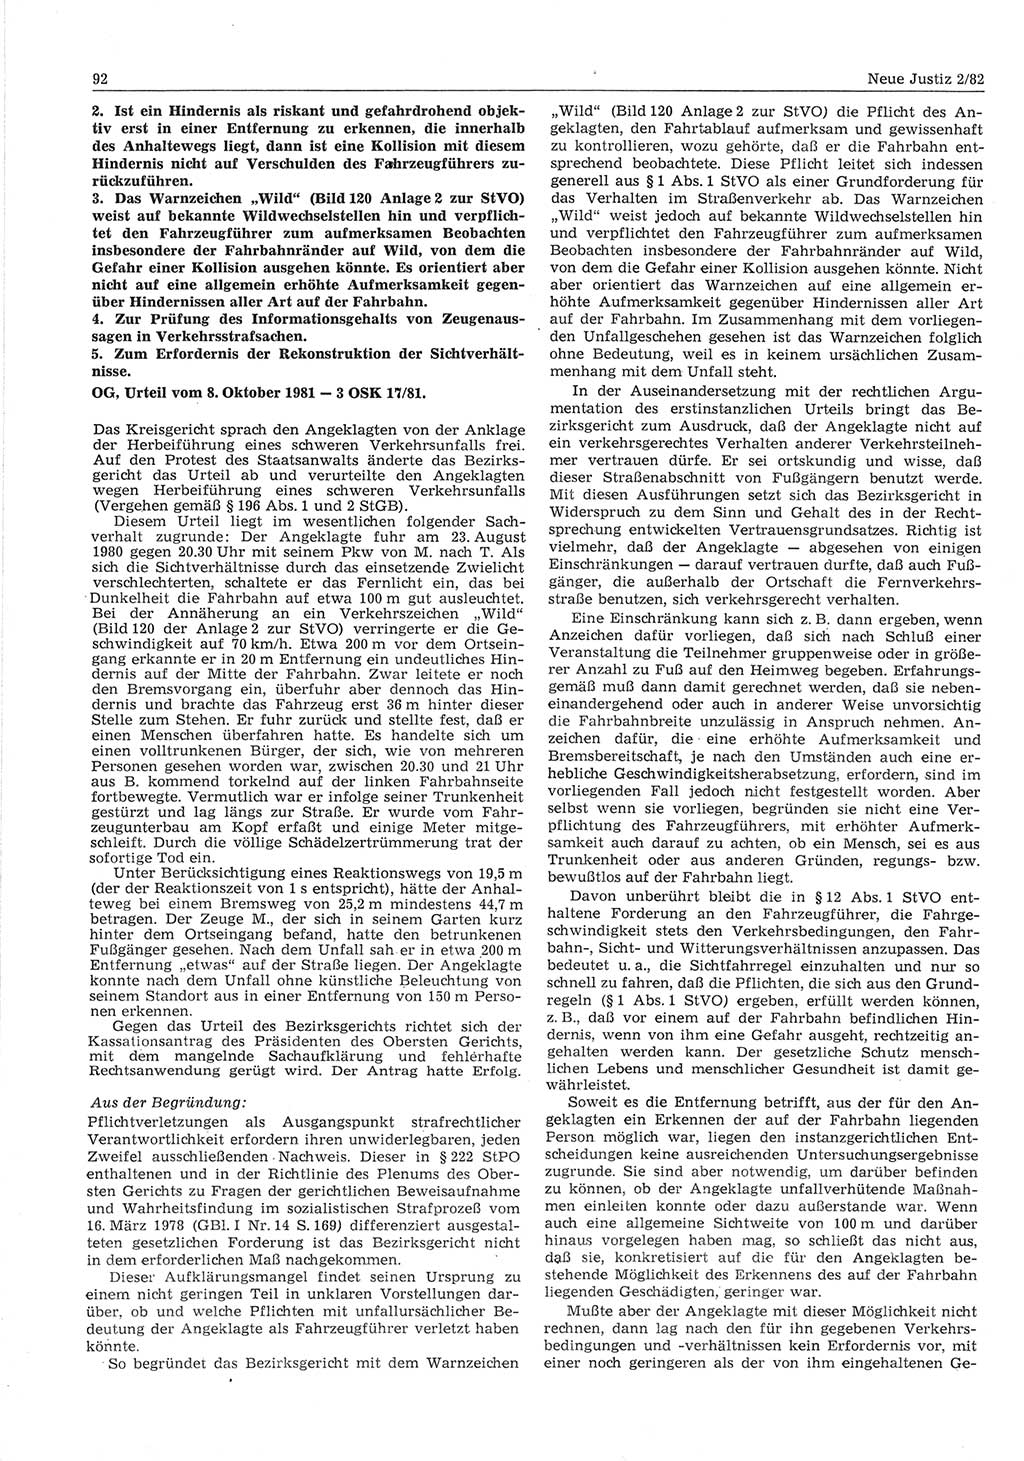 Neue Justiz (NJ), Zeitschrift für sozialistisches Recht und Gesetzlichkeit [Deutsche Demokratische Republik (DDR)], 36. Jahrgang 1982, Seite 92 (NJ DDR 1982, S. 92)